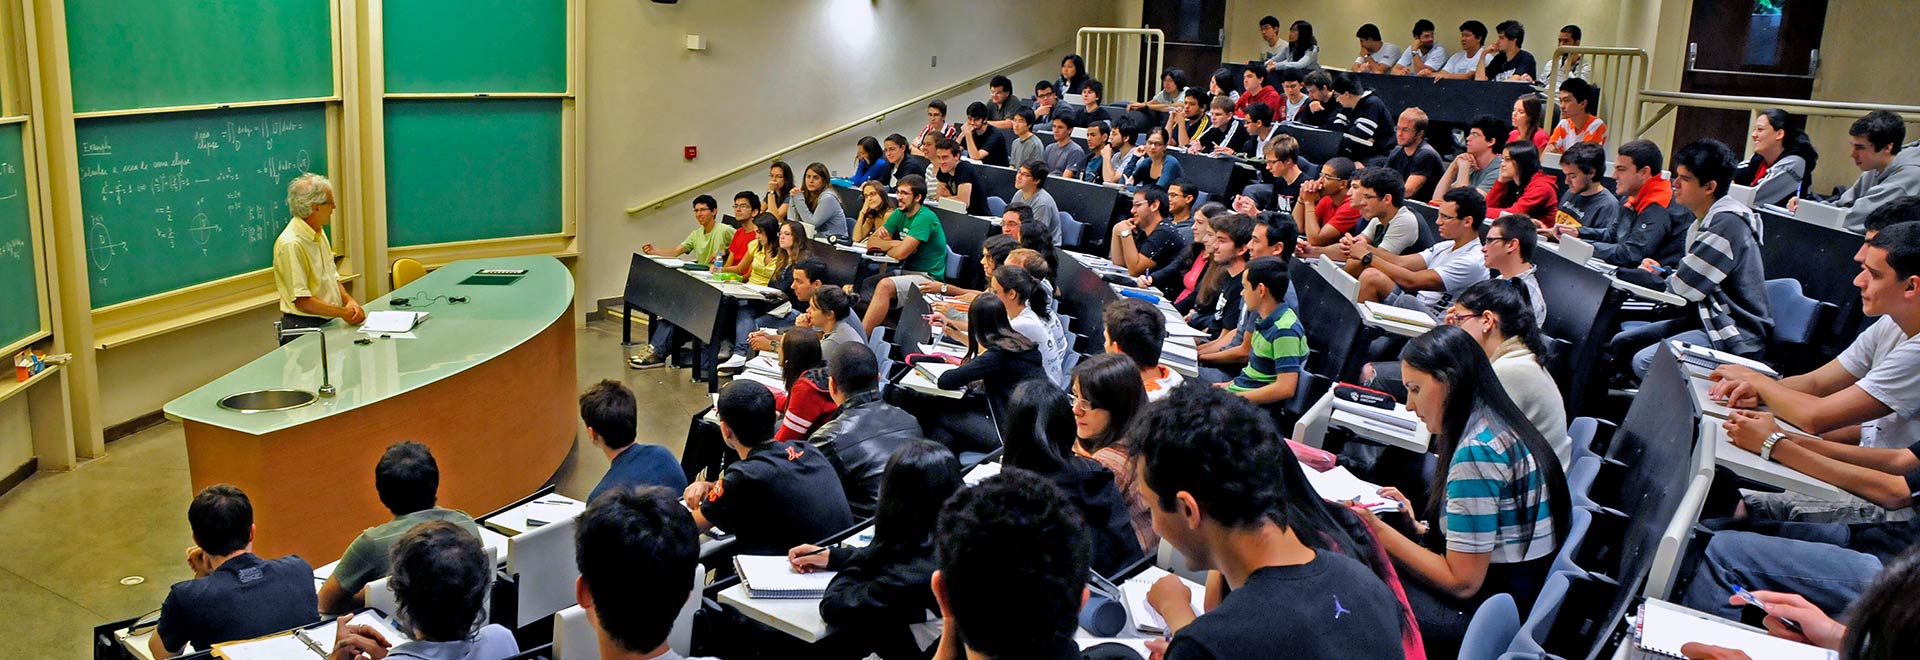 Aula de um dos cursos oferecidos no Ciclo Básico 1 (Foto: Antoninho Perri) 